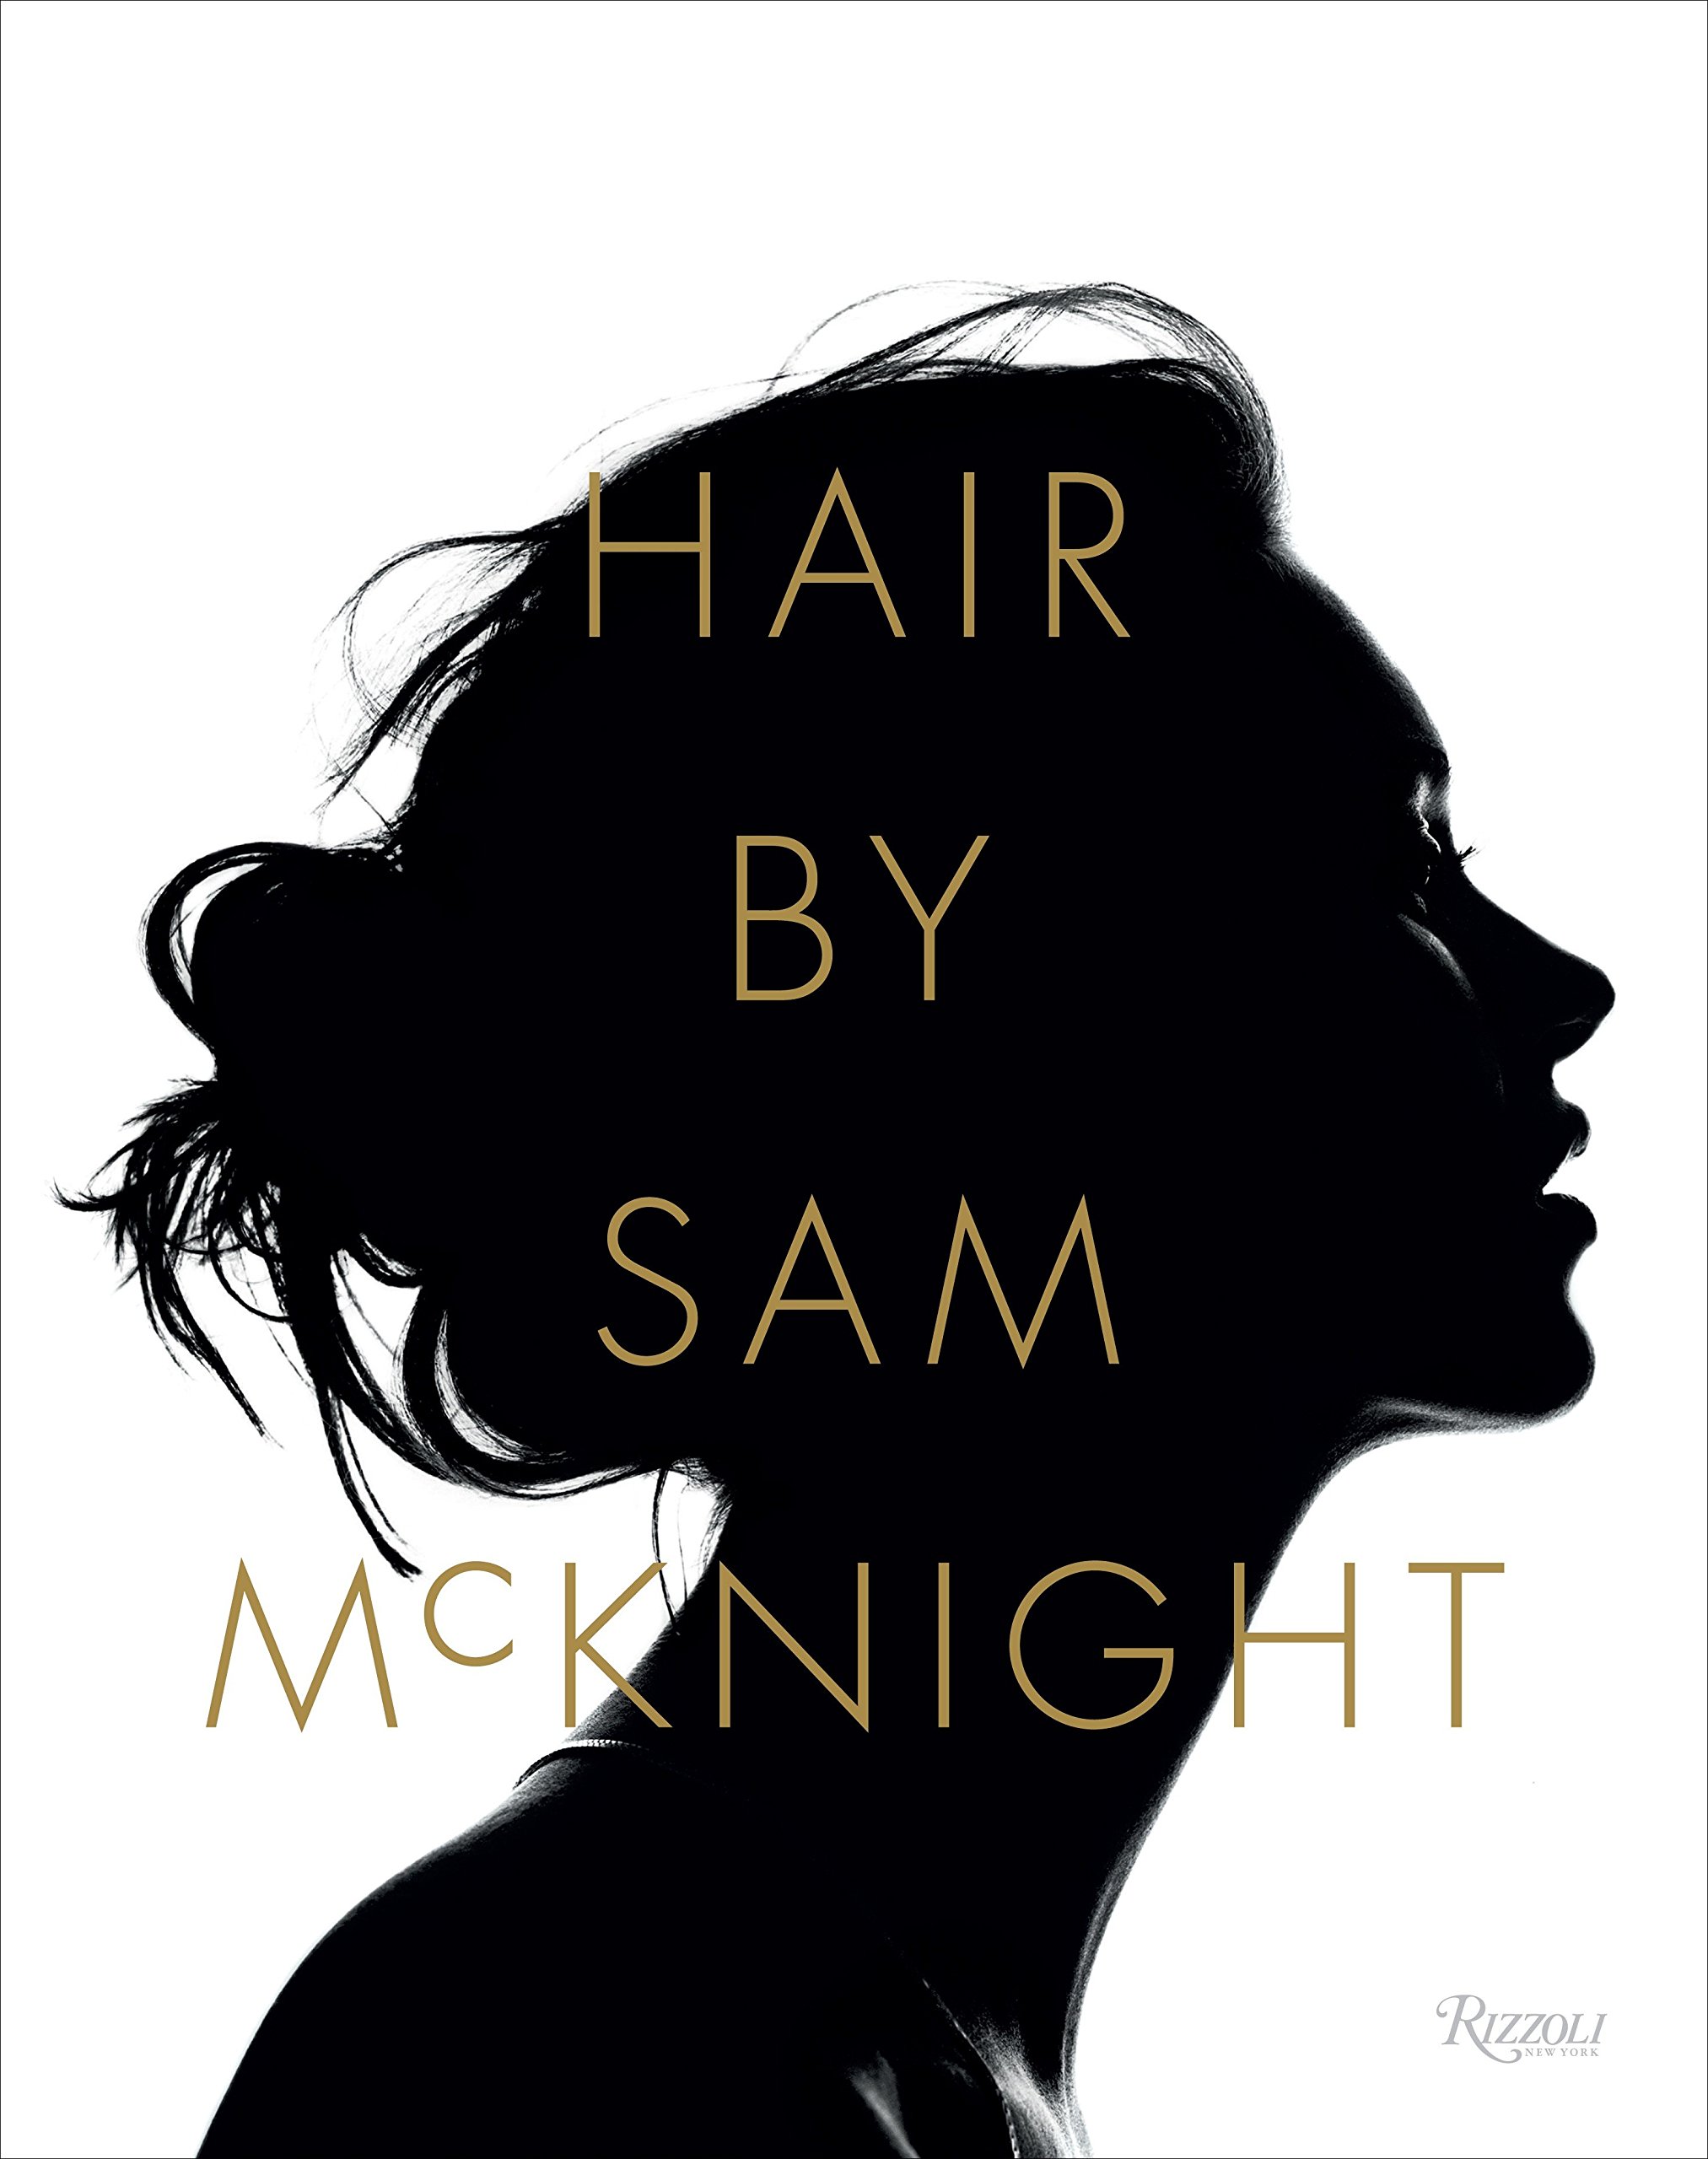 The Hair by Sam McKnight book